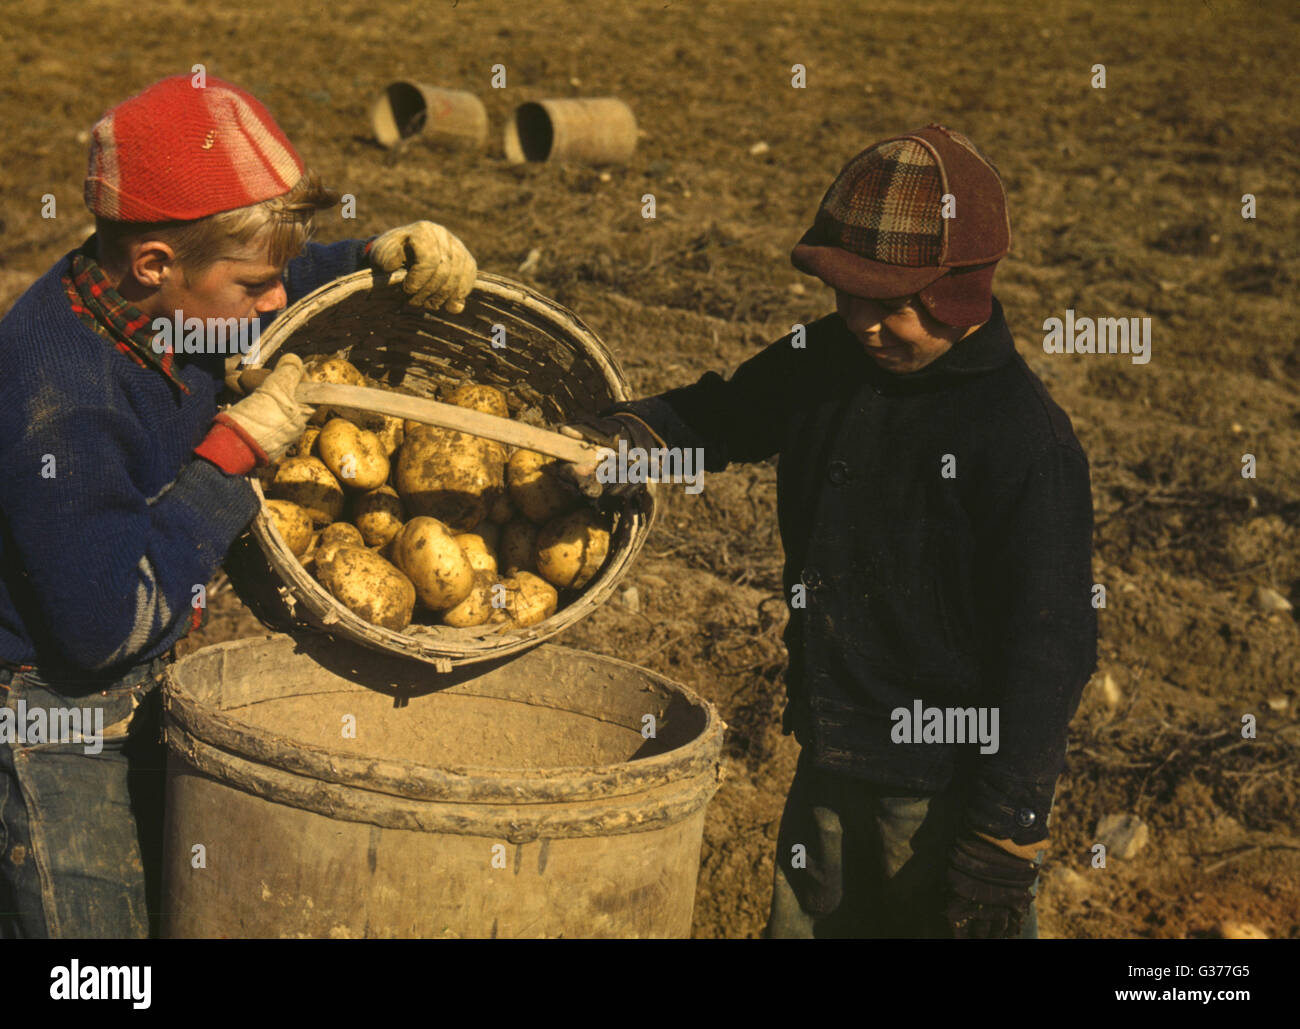 Kinder sammeln Kartoffeln auf einem großen Bauernhof in der Nähe von Car Stockfoto